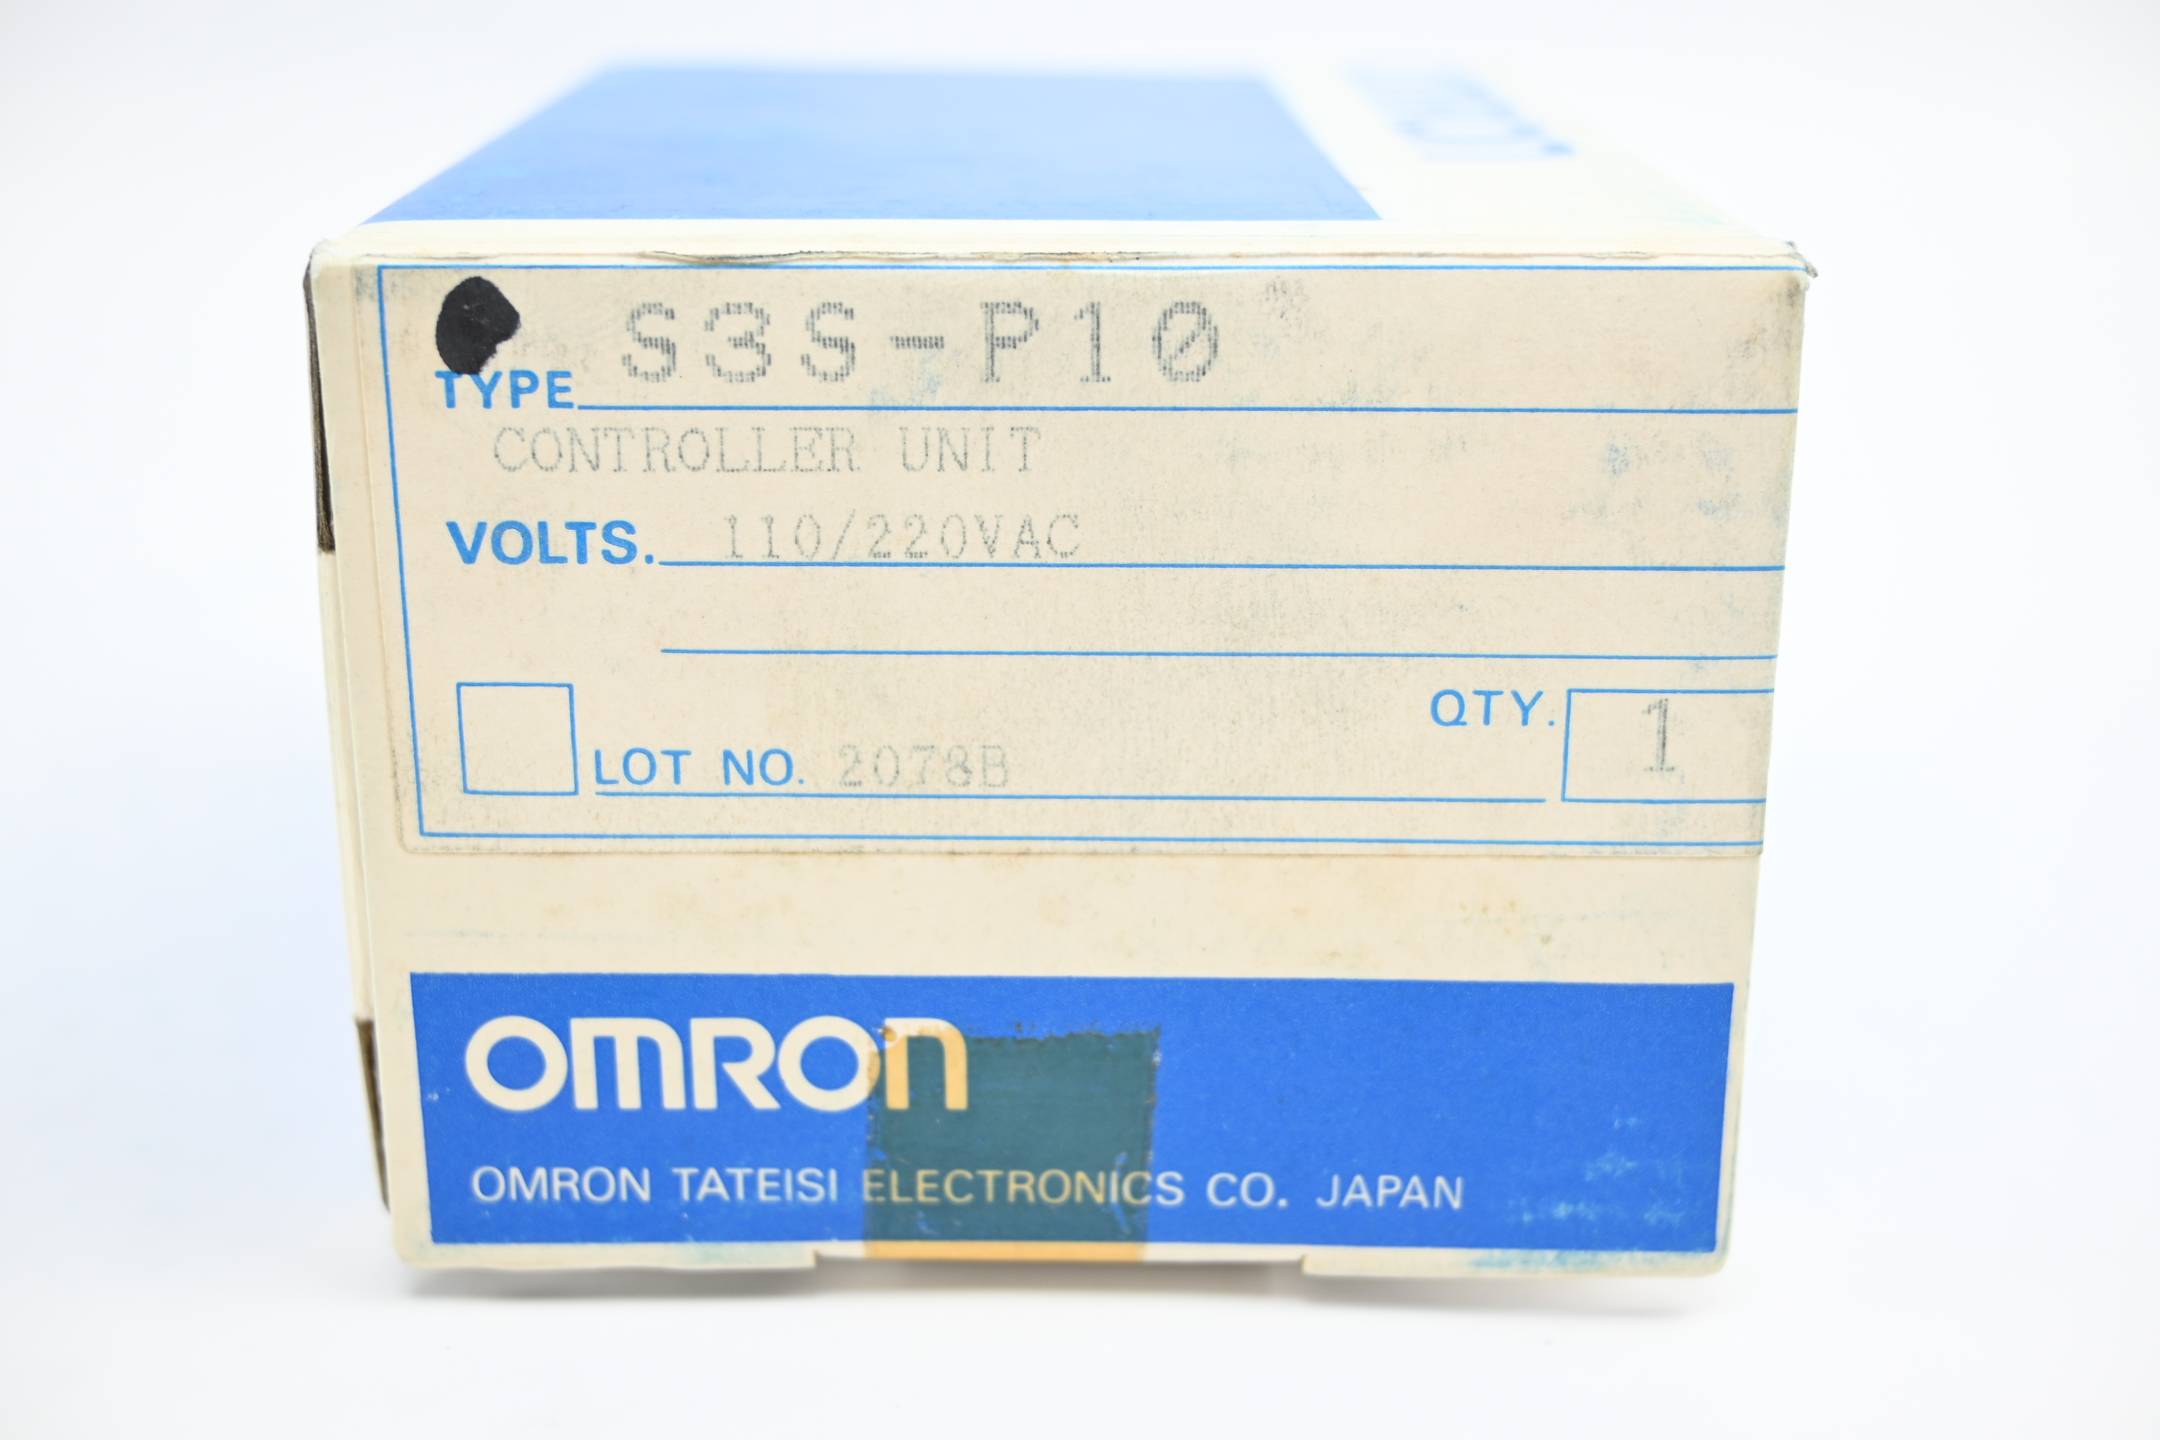 Omron Control Unit Kontrolleinheit 110/220 VAC ( S3S-P10 )